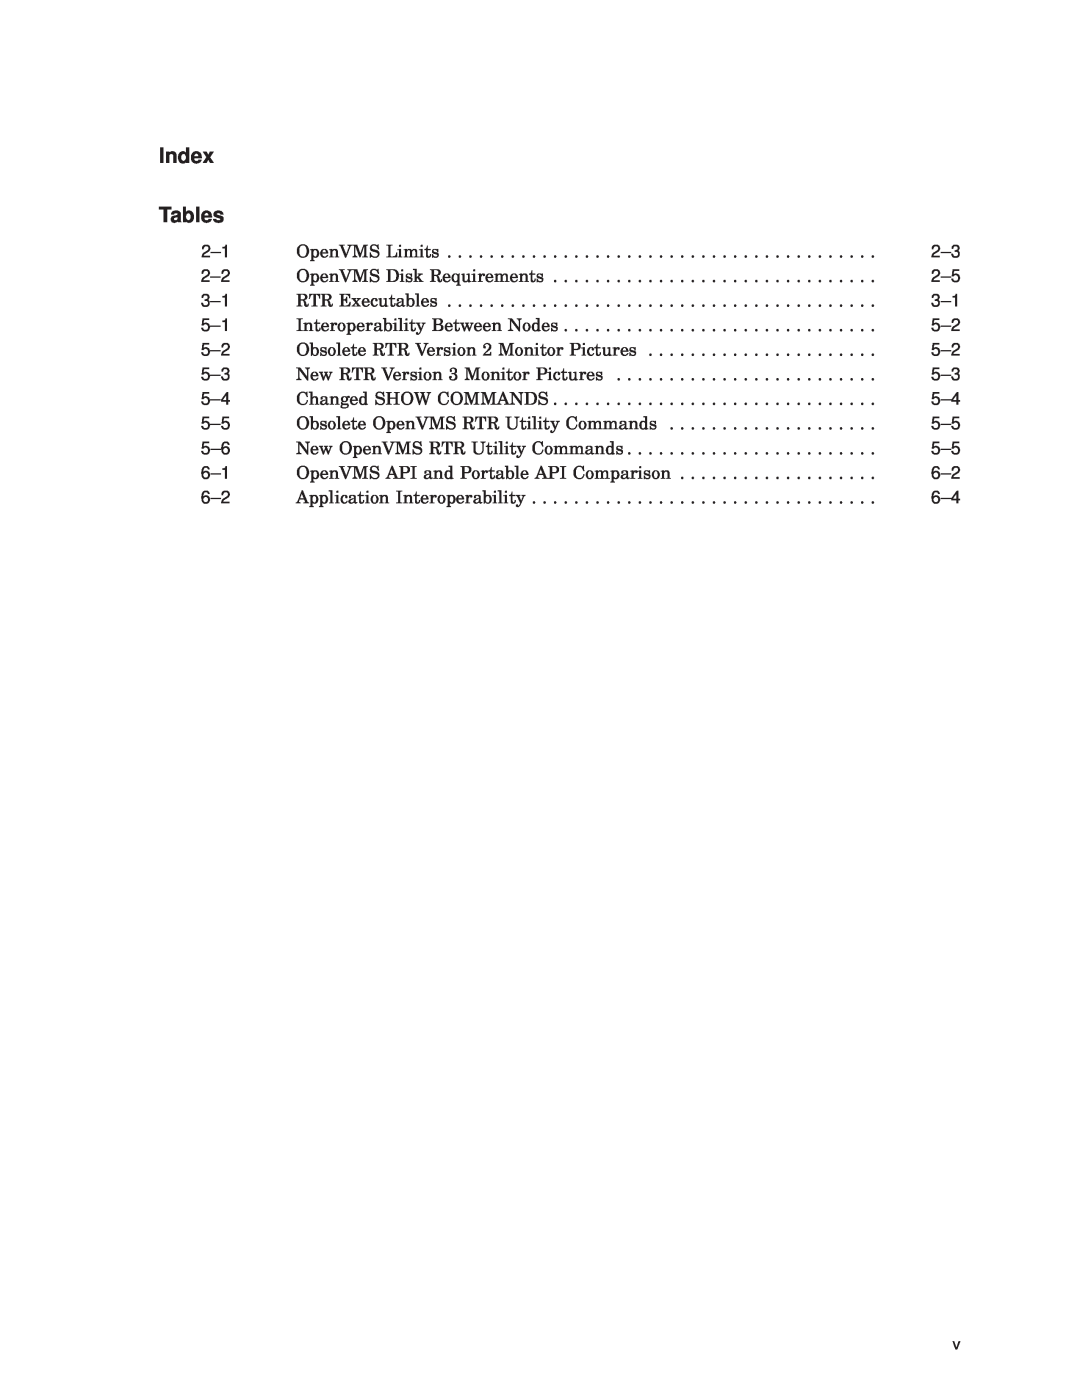 Compaq AAR-88LB-TE manual Index Tables 